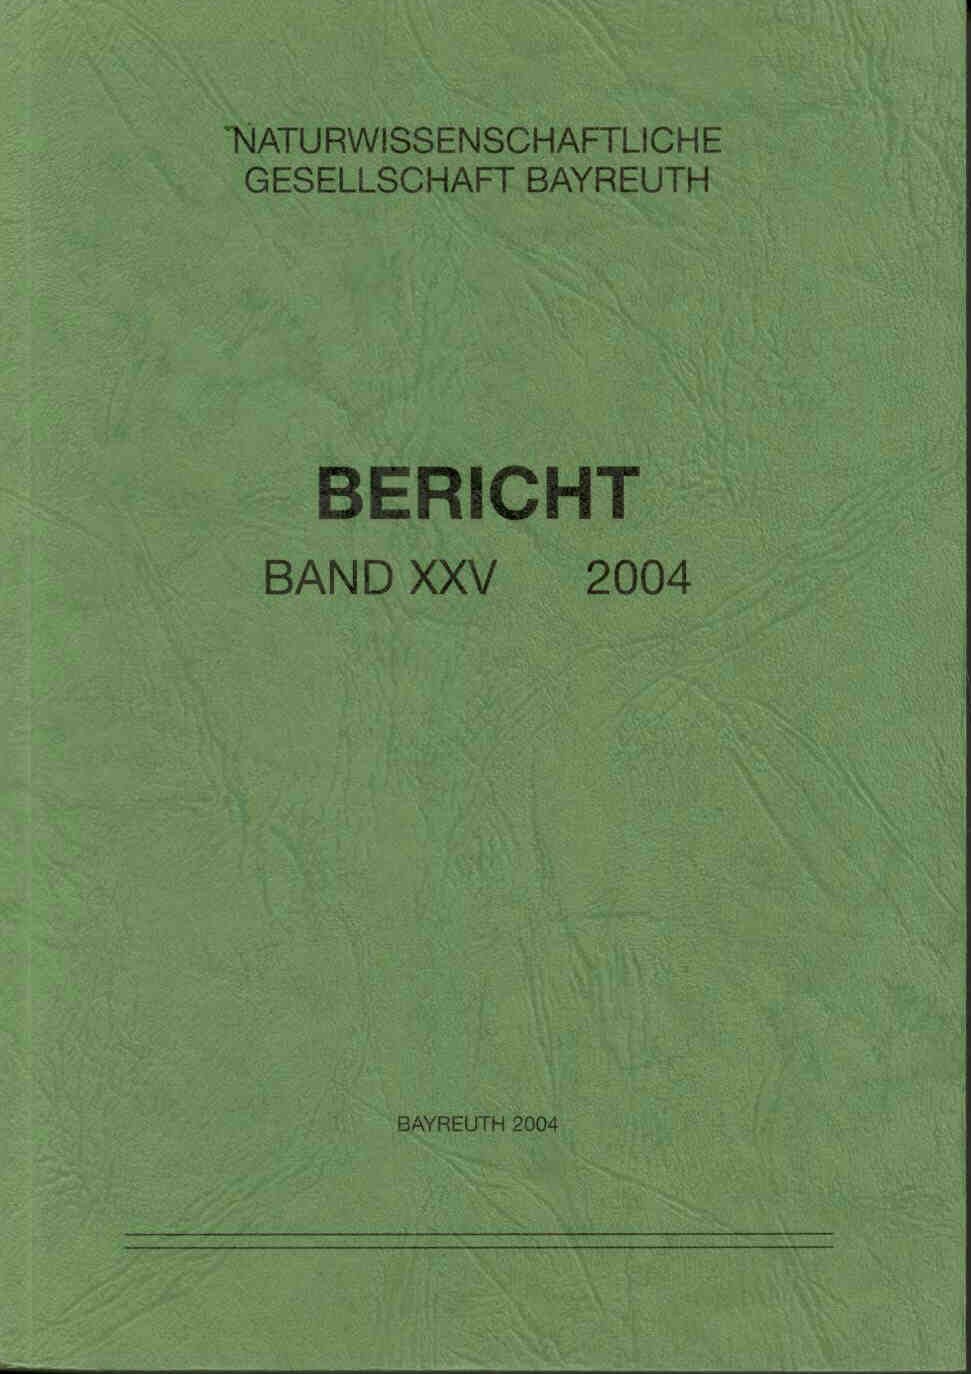 Dettner K.: Berichte der Naturwissenschaftlichen Gesellschaft Bayreuth Band XXV . Bericht 2004